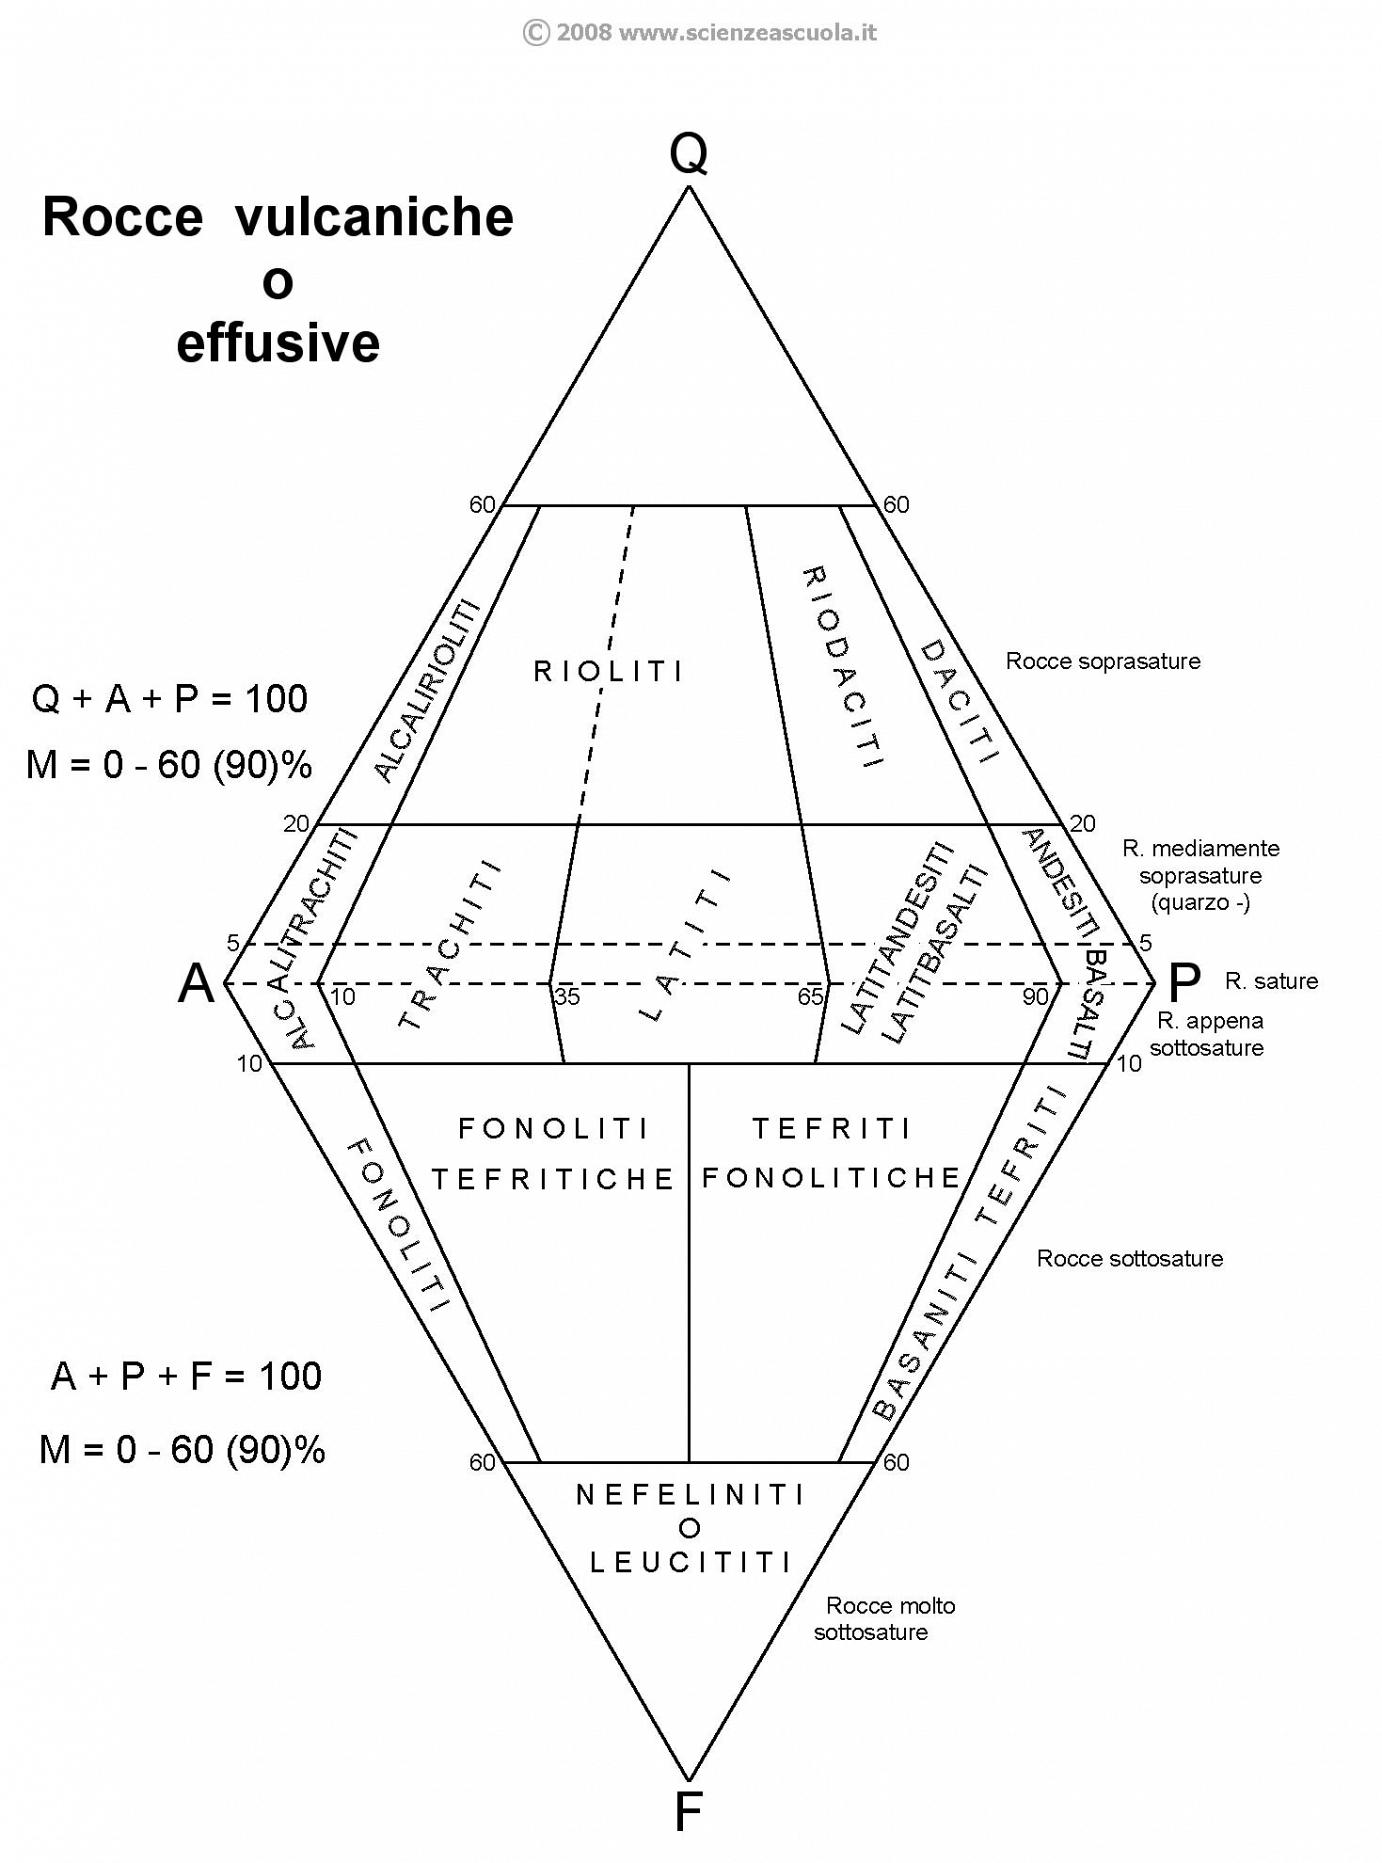 diagramma di Streckeisen per le rocce effusive (vulcaniche)